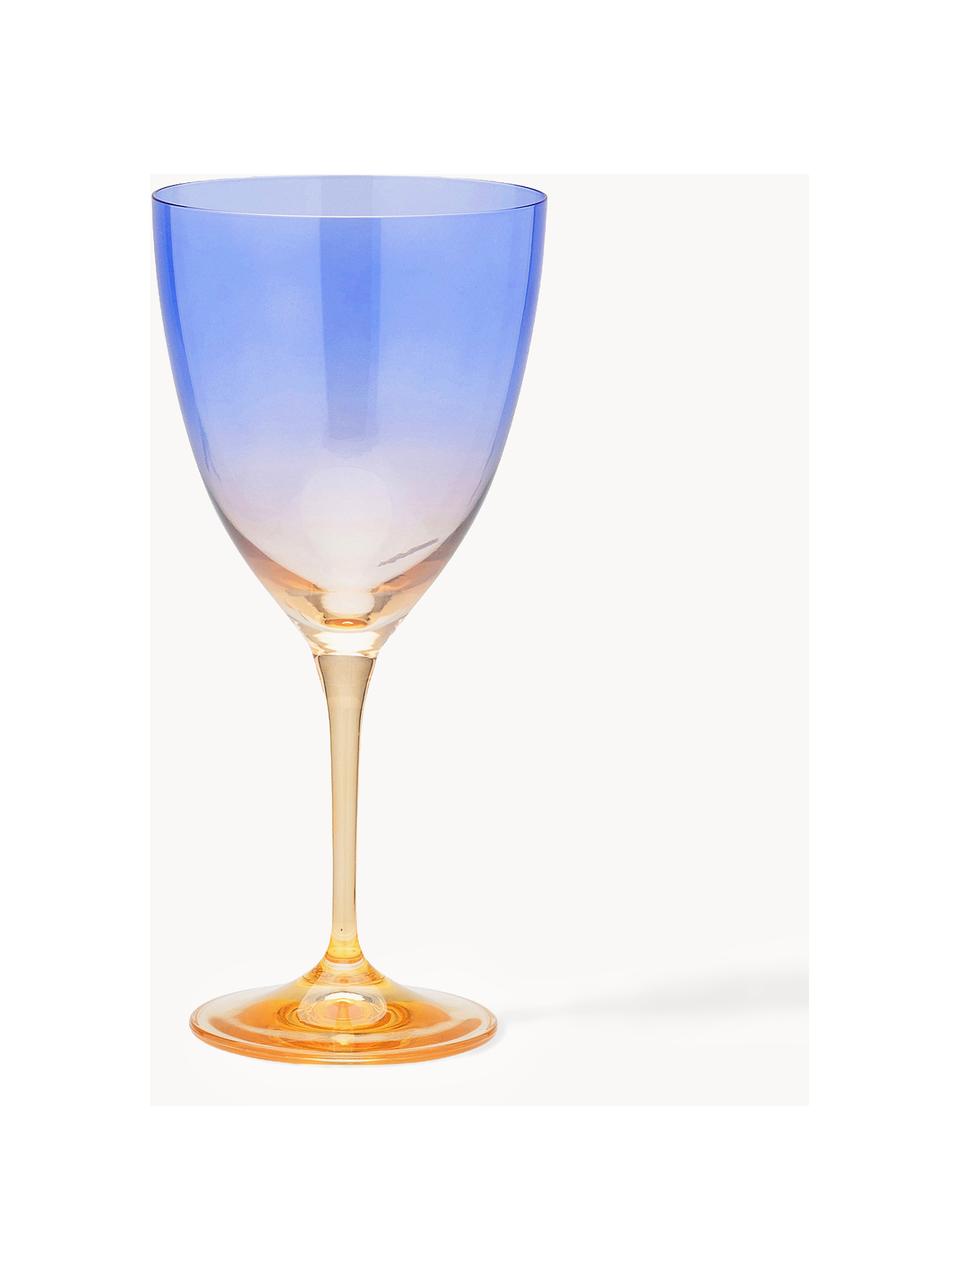 Weingläser Ombre Flash, 2 Stück, Glas, Royalblau, Sonnengelb, Ø 10 x H 12 cm, 400 ml